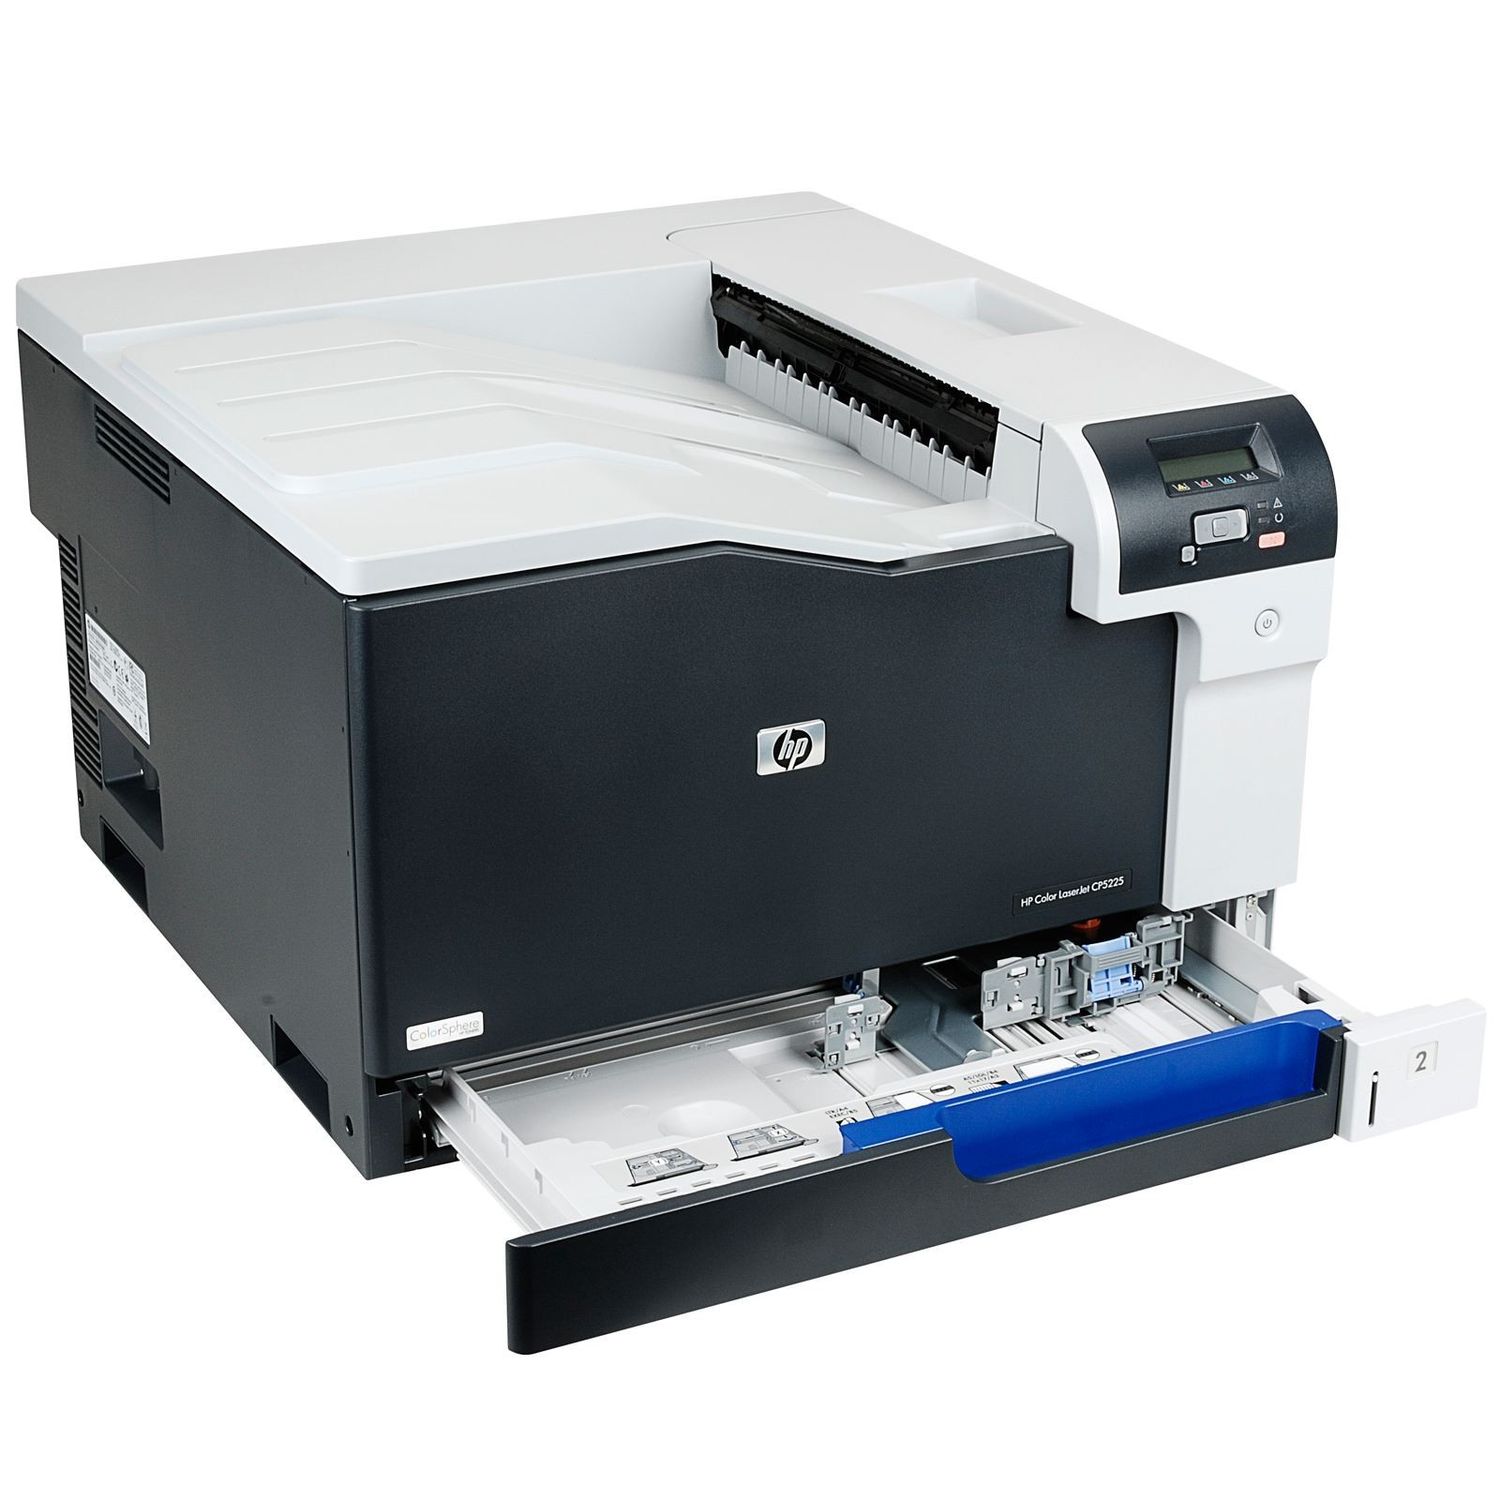 Принтер HP Color LaserJet Pro CP5225, цвет цветной CE710A - фото 1